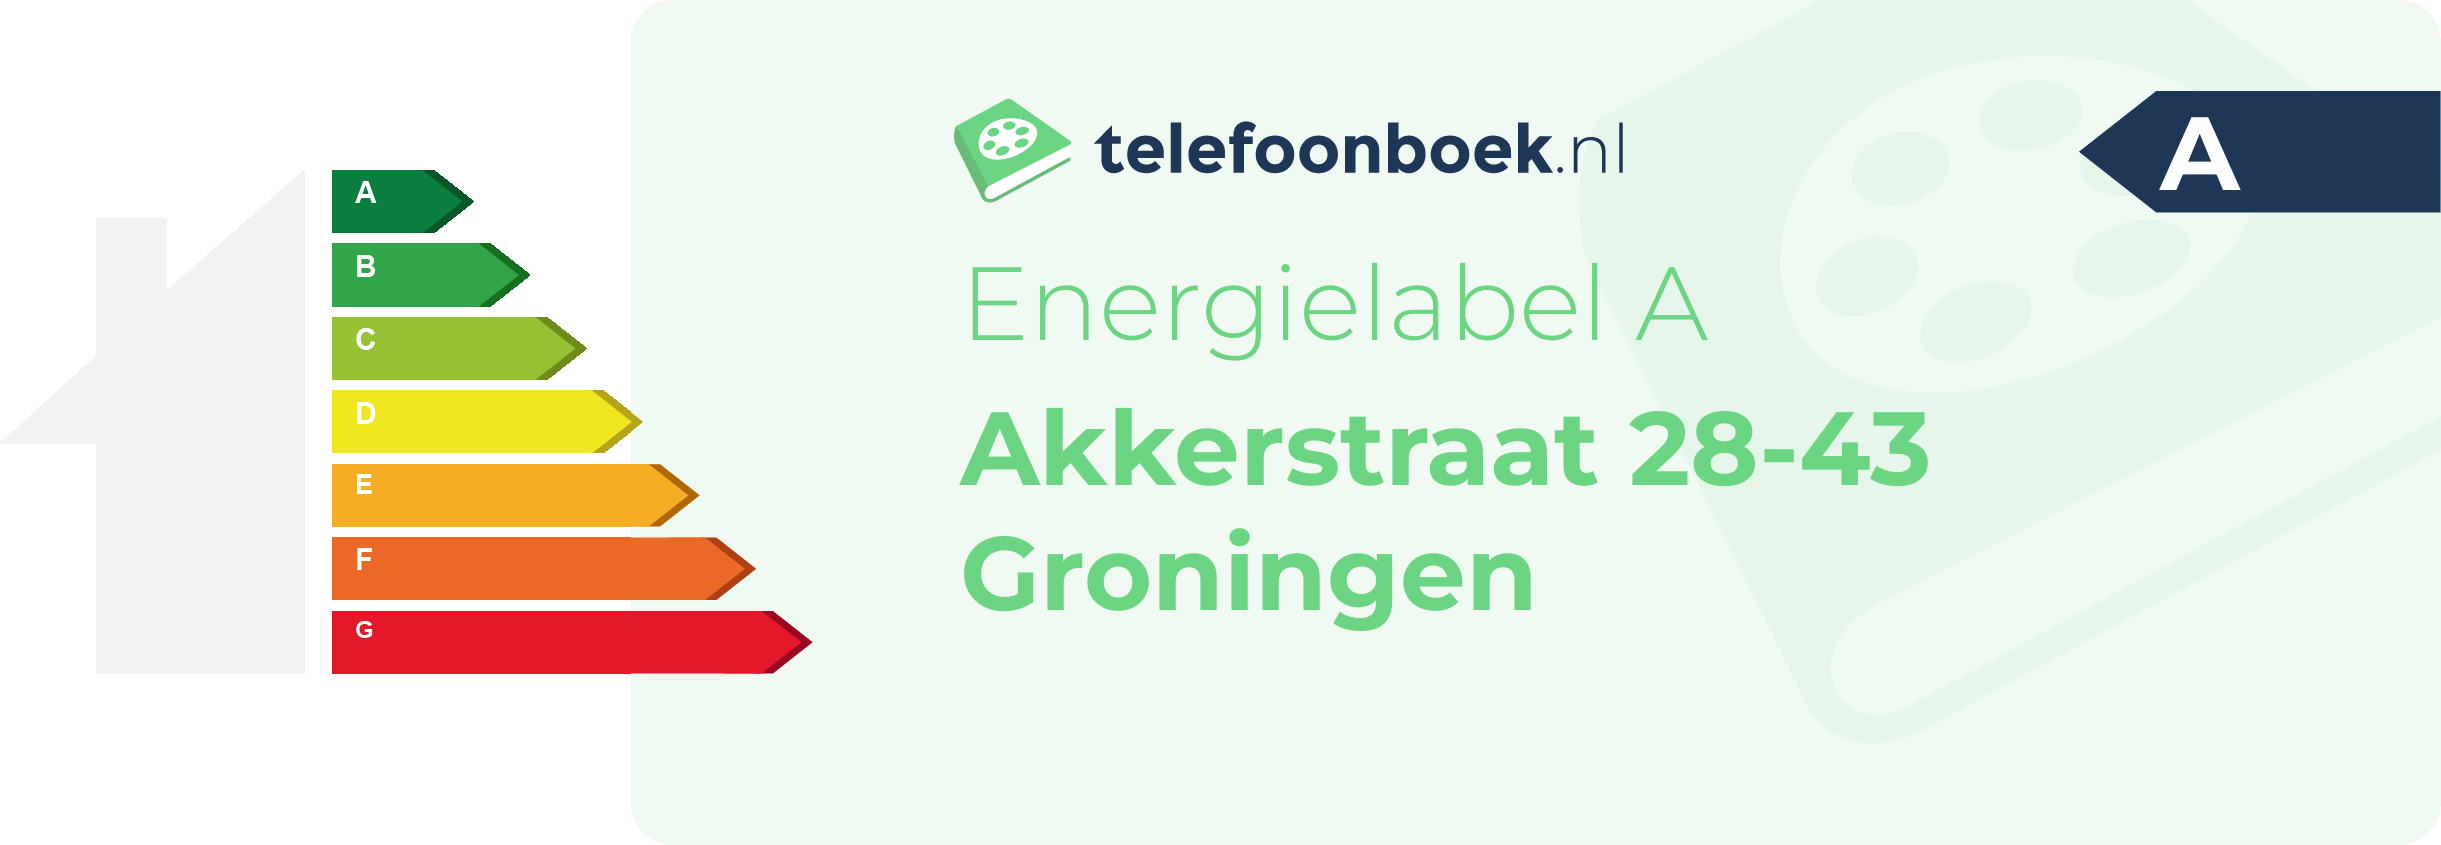 Energielabel Akkerstraat 28-43 Groningen